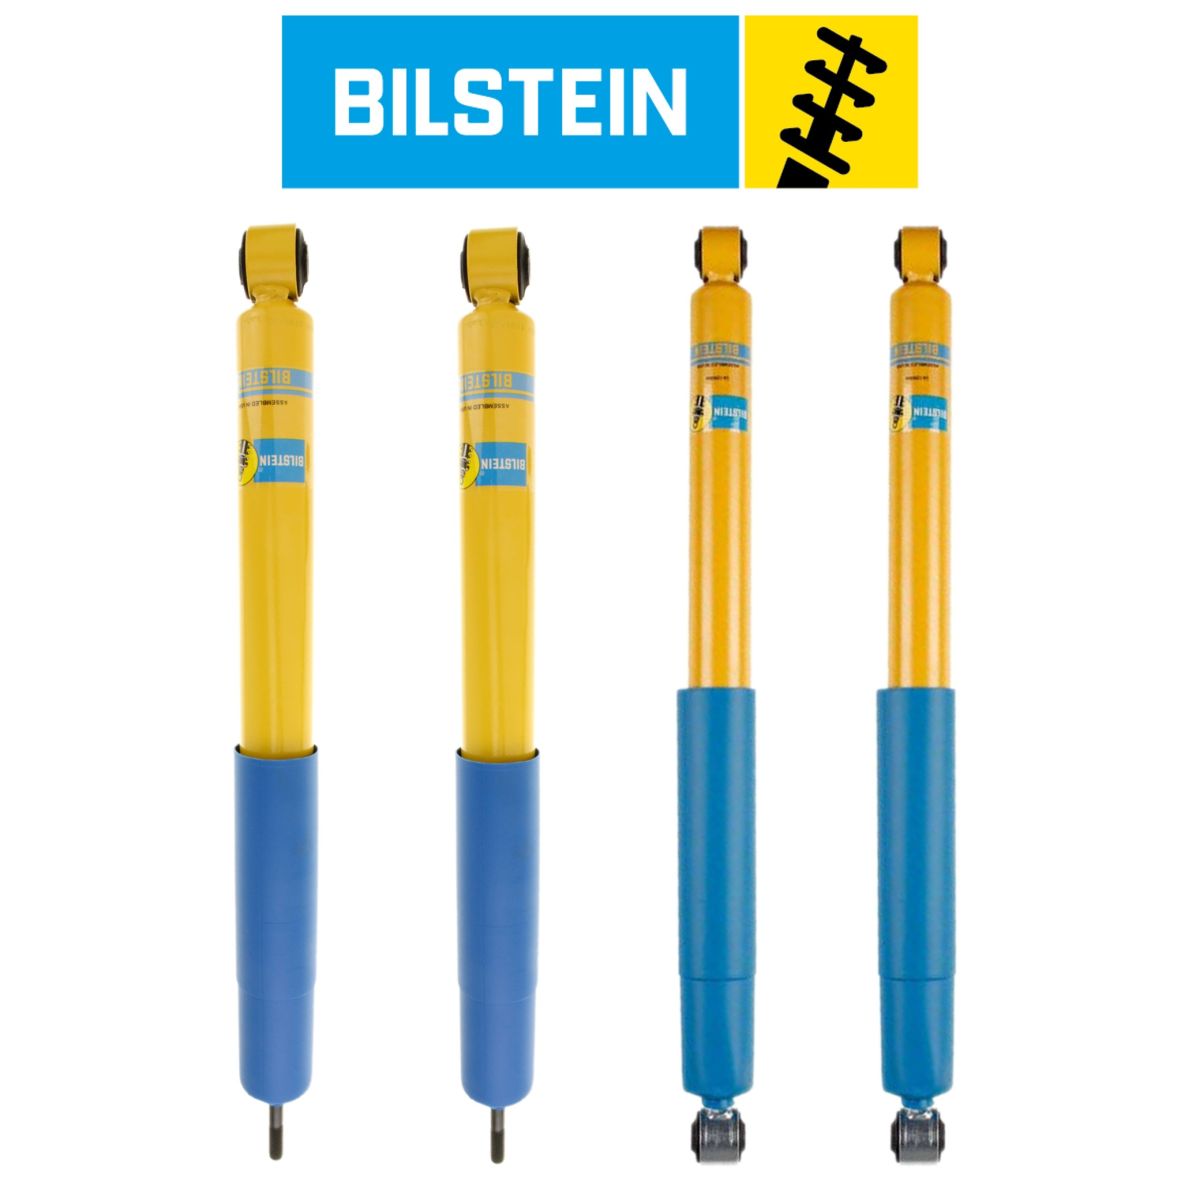 Bilstein - Bilstein 4600 Monotube Front & Rear Shock Set For 03-13 Dodge Ram 1500/2500/3500